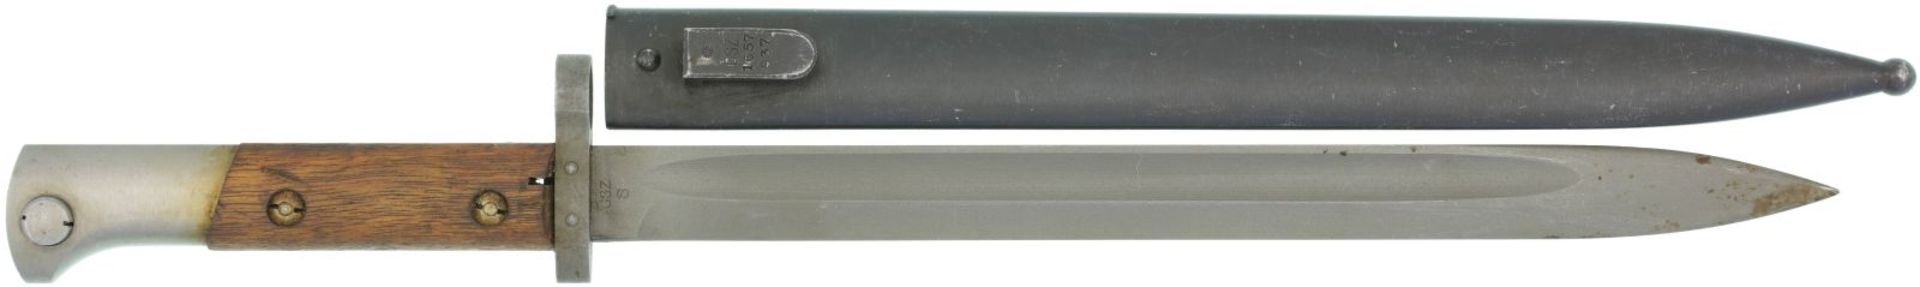 Bajonett VZ24 zu Mauser 98/24@ KL 300mm, TL 435mm, einschneidige phosphatierte Klinge mit